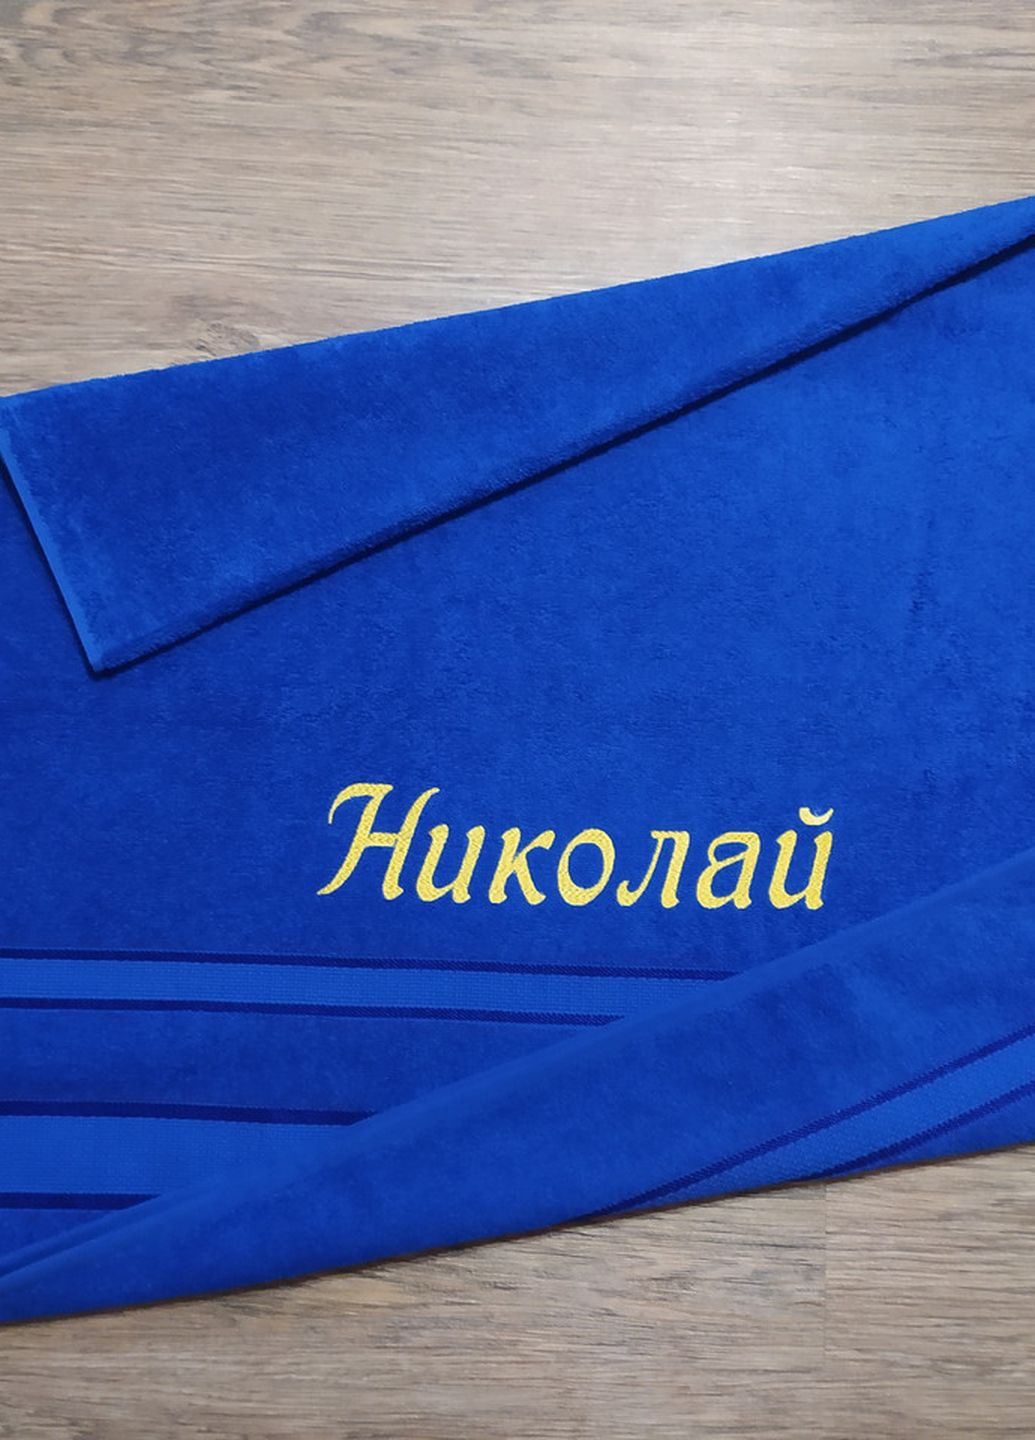 No Brand полотенце с именной вышивкой махровое банное 70*140 синий николай 04260 однотонный синий производство - Украина